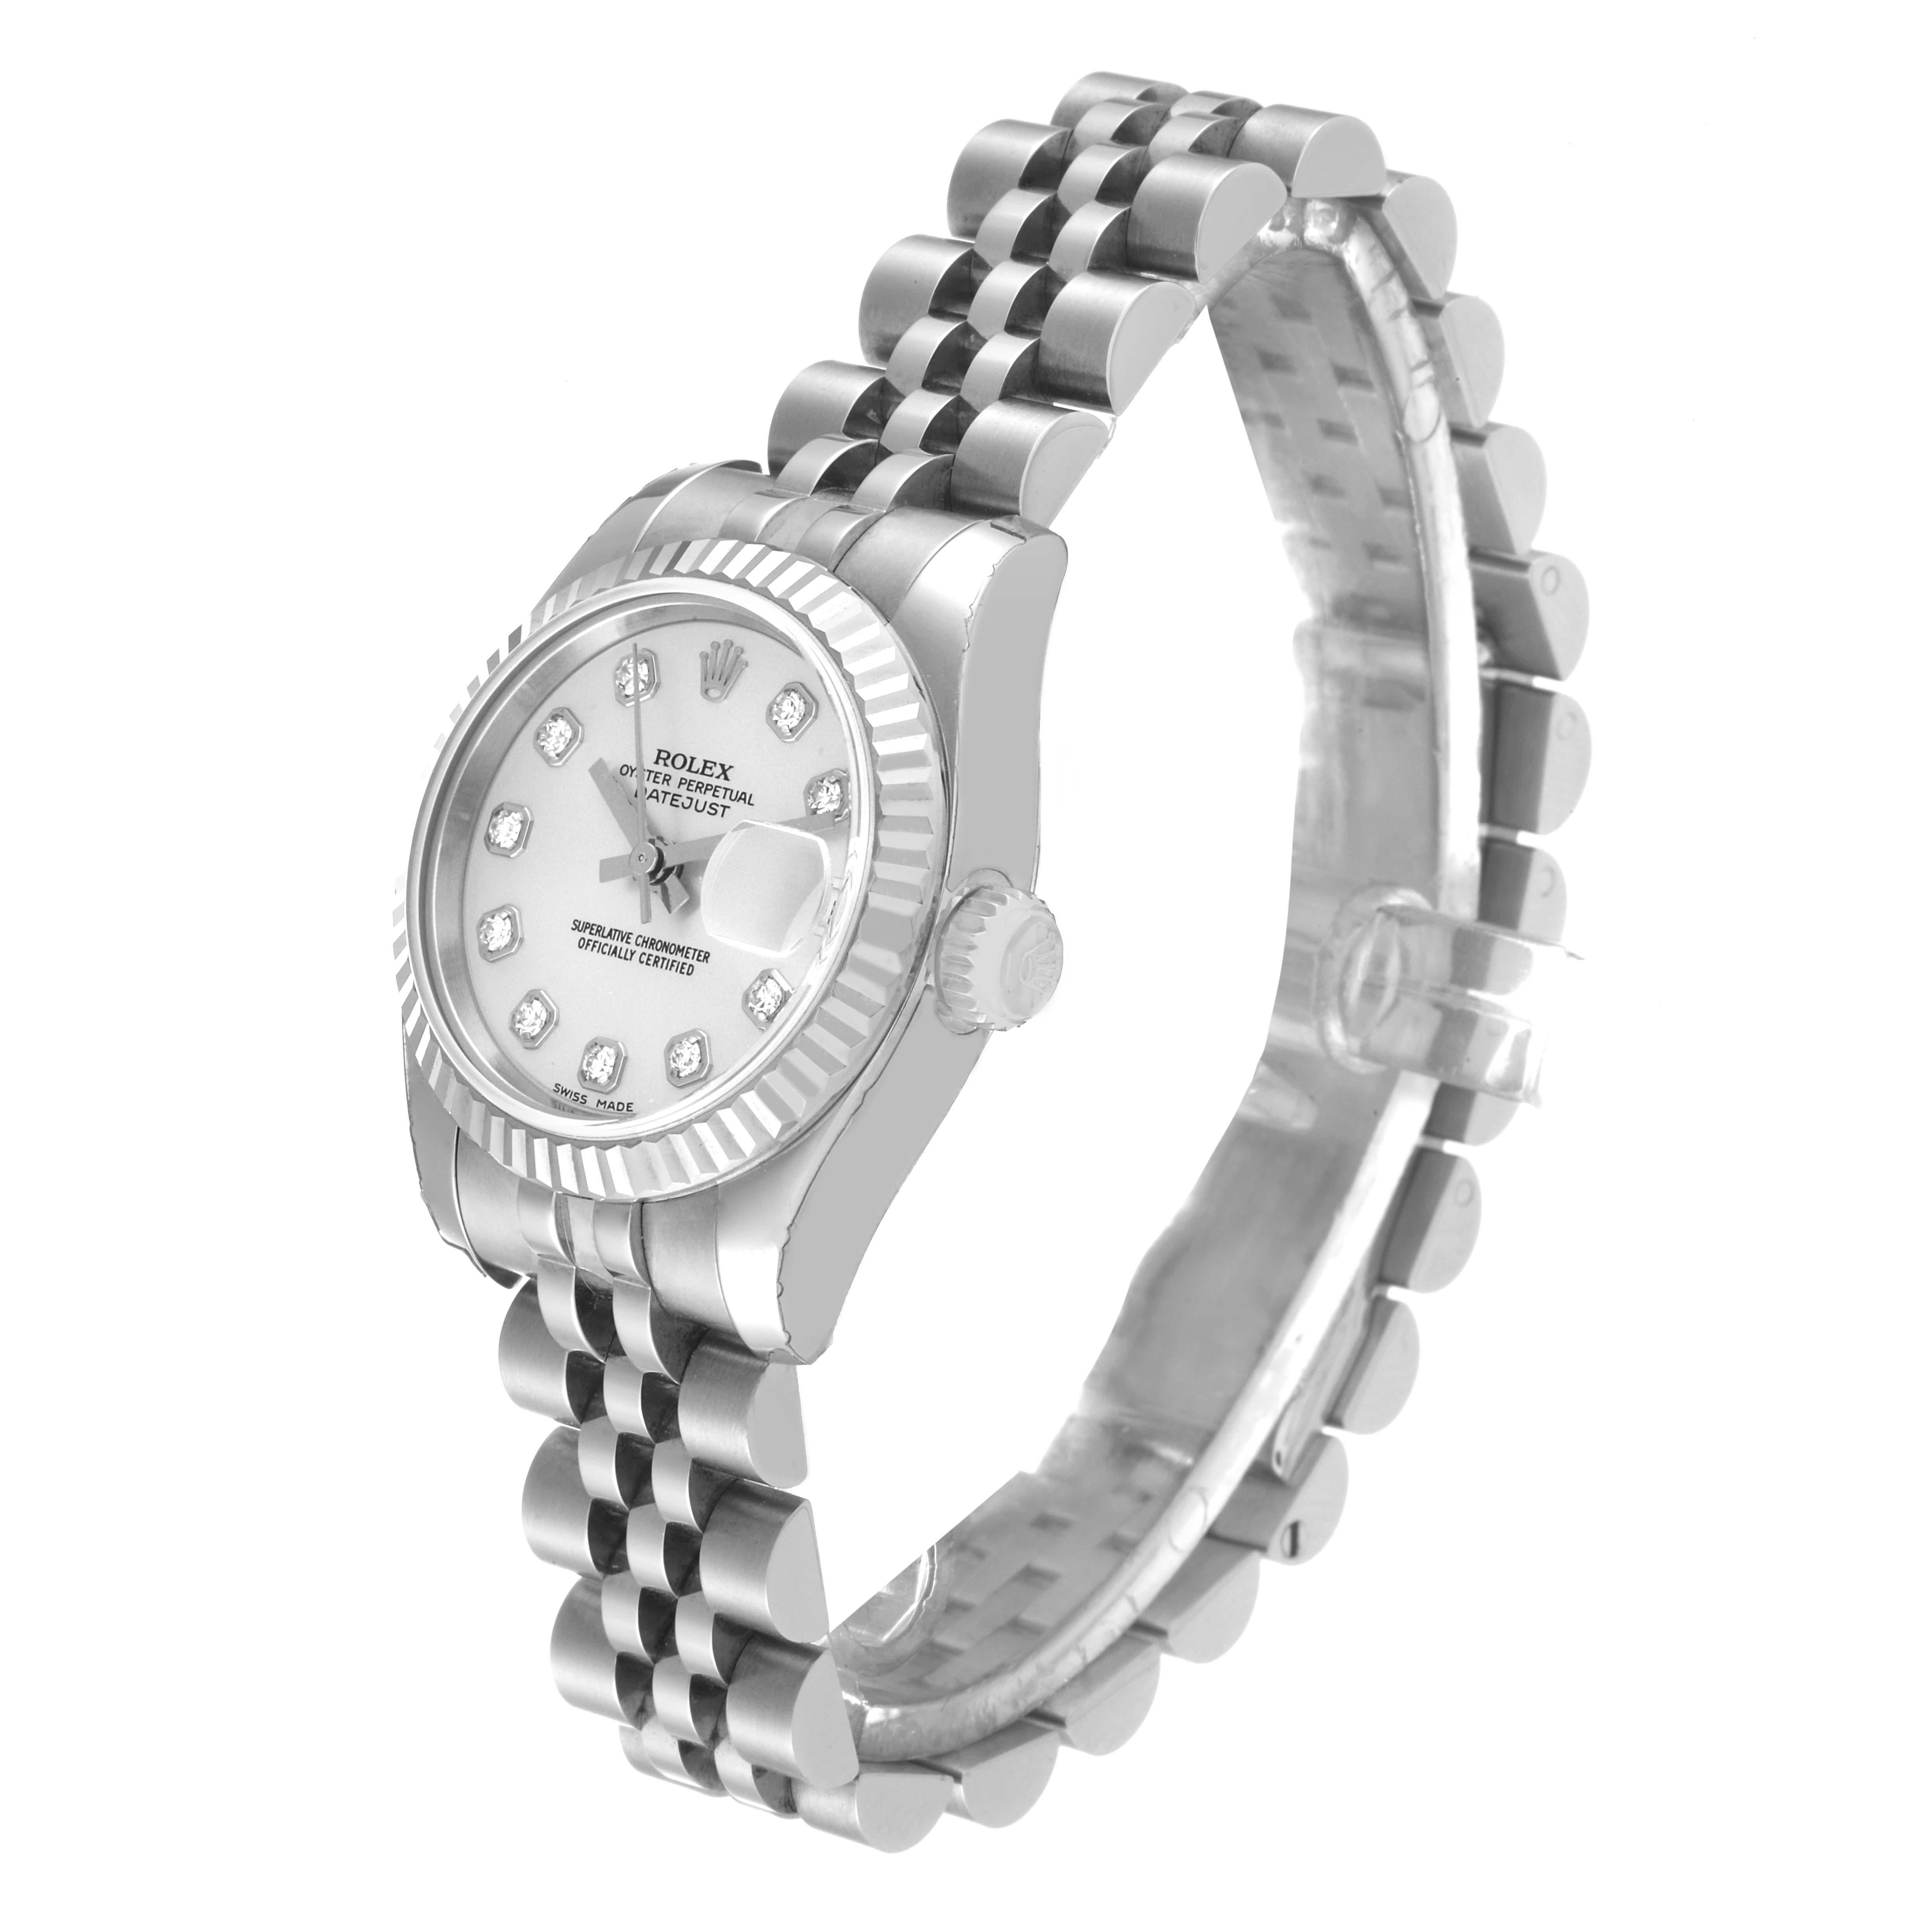 Women's Rolex Datejust Steel White Gold Diamond Dial Ladies Watch 179174 Unworn NOS